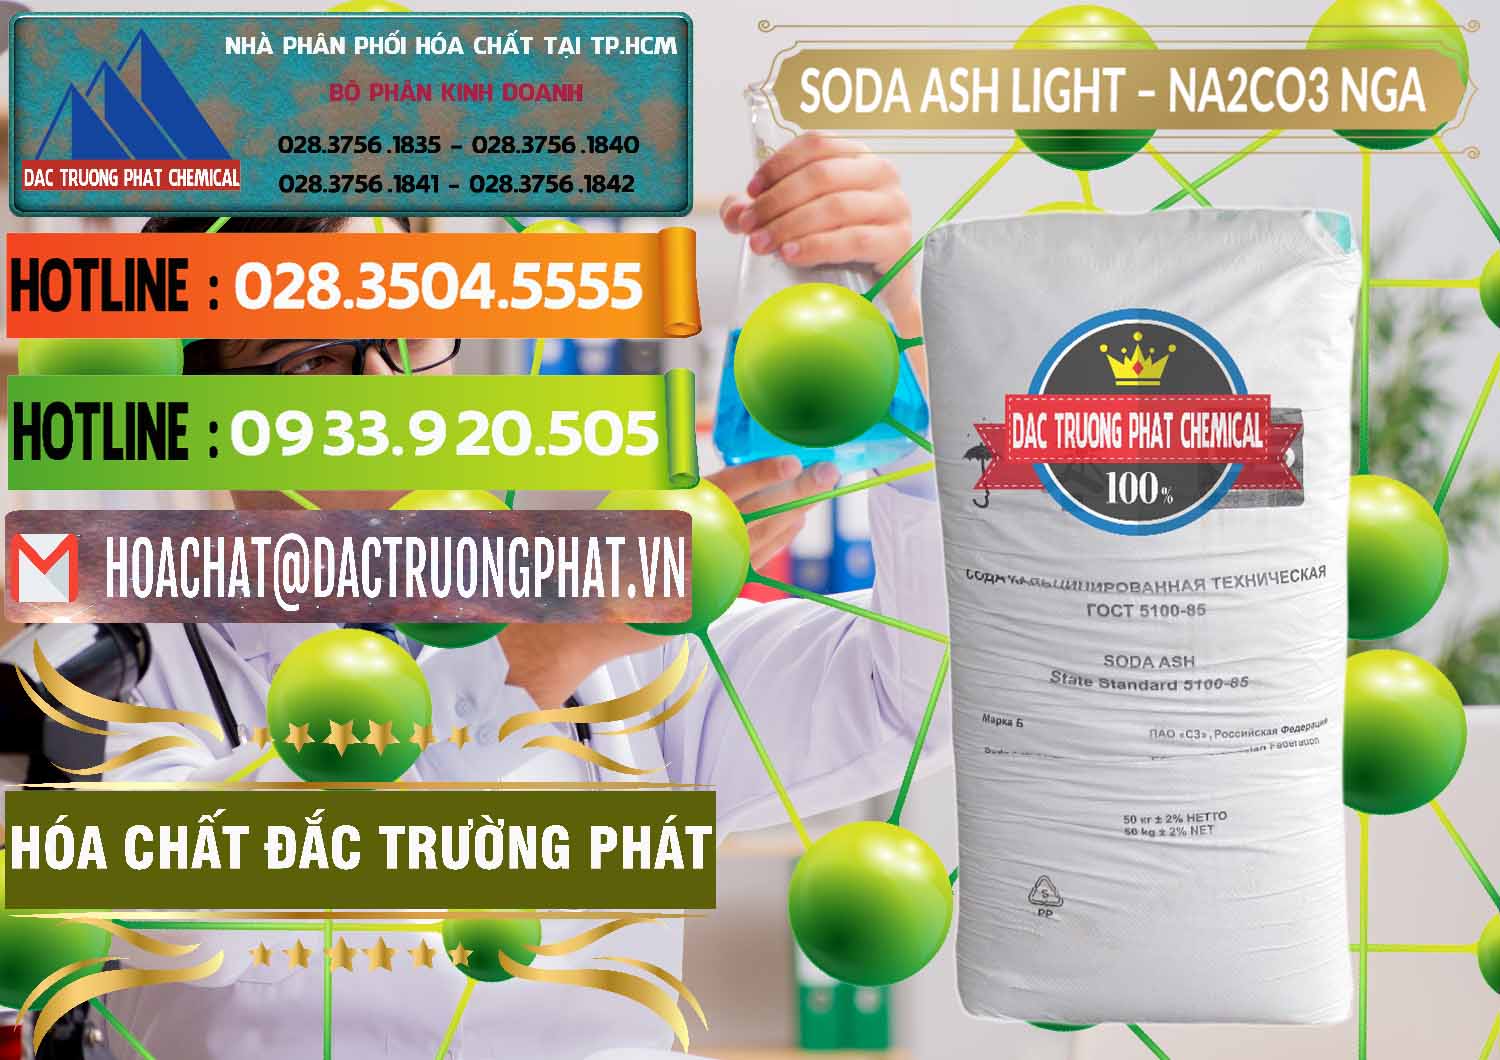 Cty chuyên bán - phân phối Soda Ash Light - NA2CO3 Nga Russia - 0128 - Kinh doanh - phân phối hóa chất tại TP.HCM - cungcaphoachat.com.vn